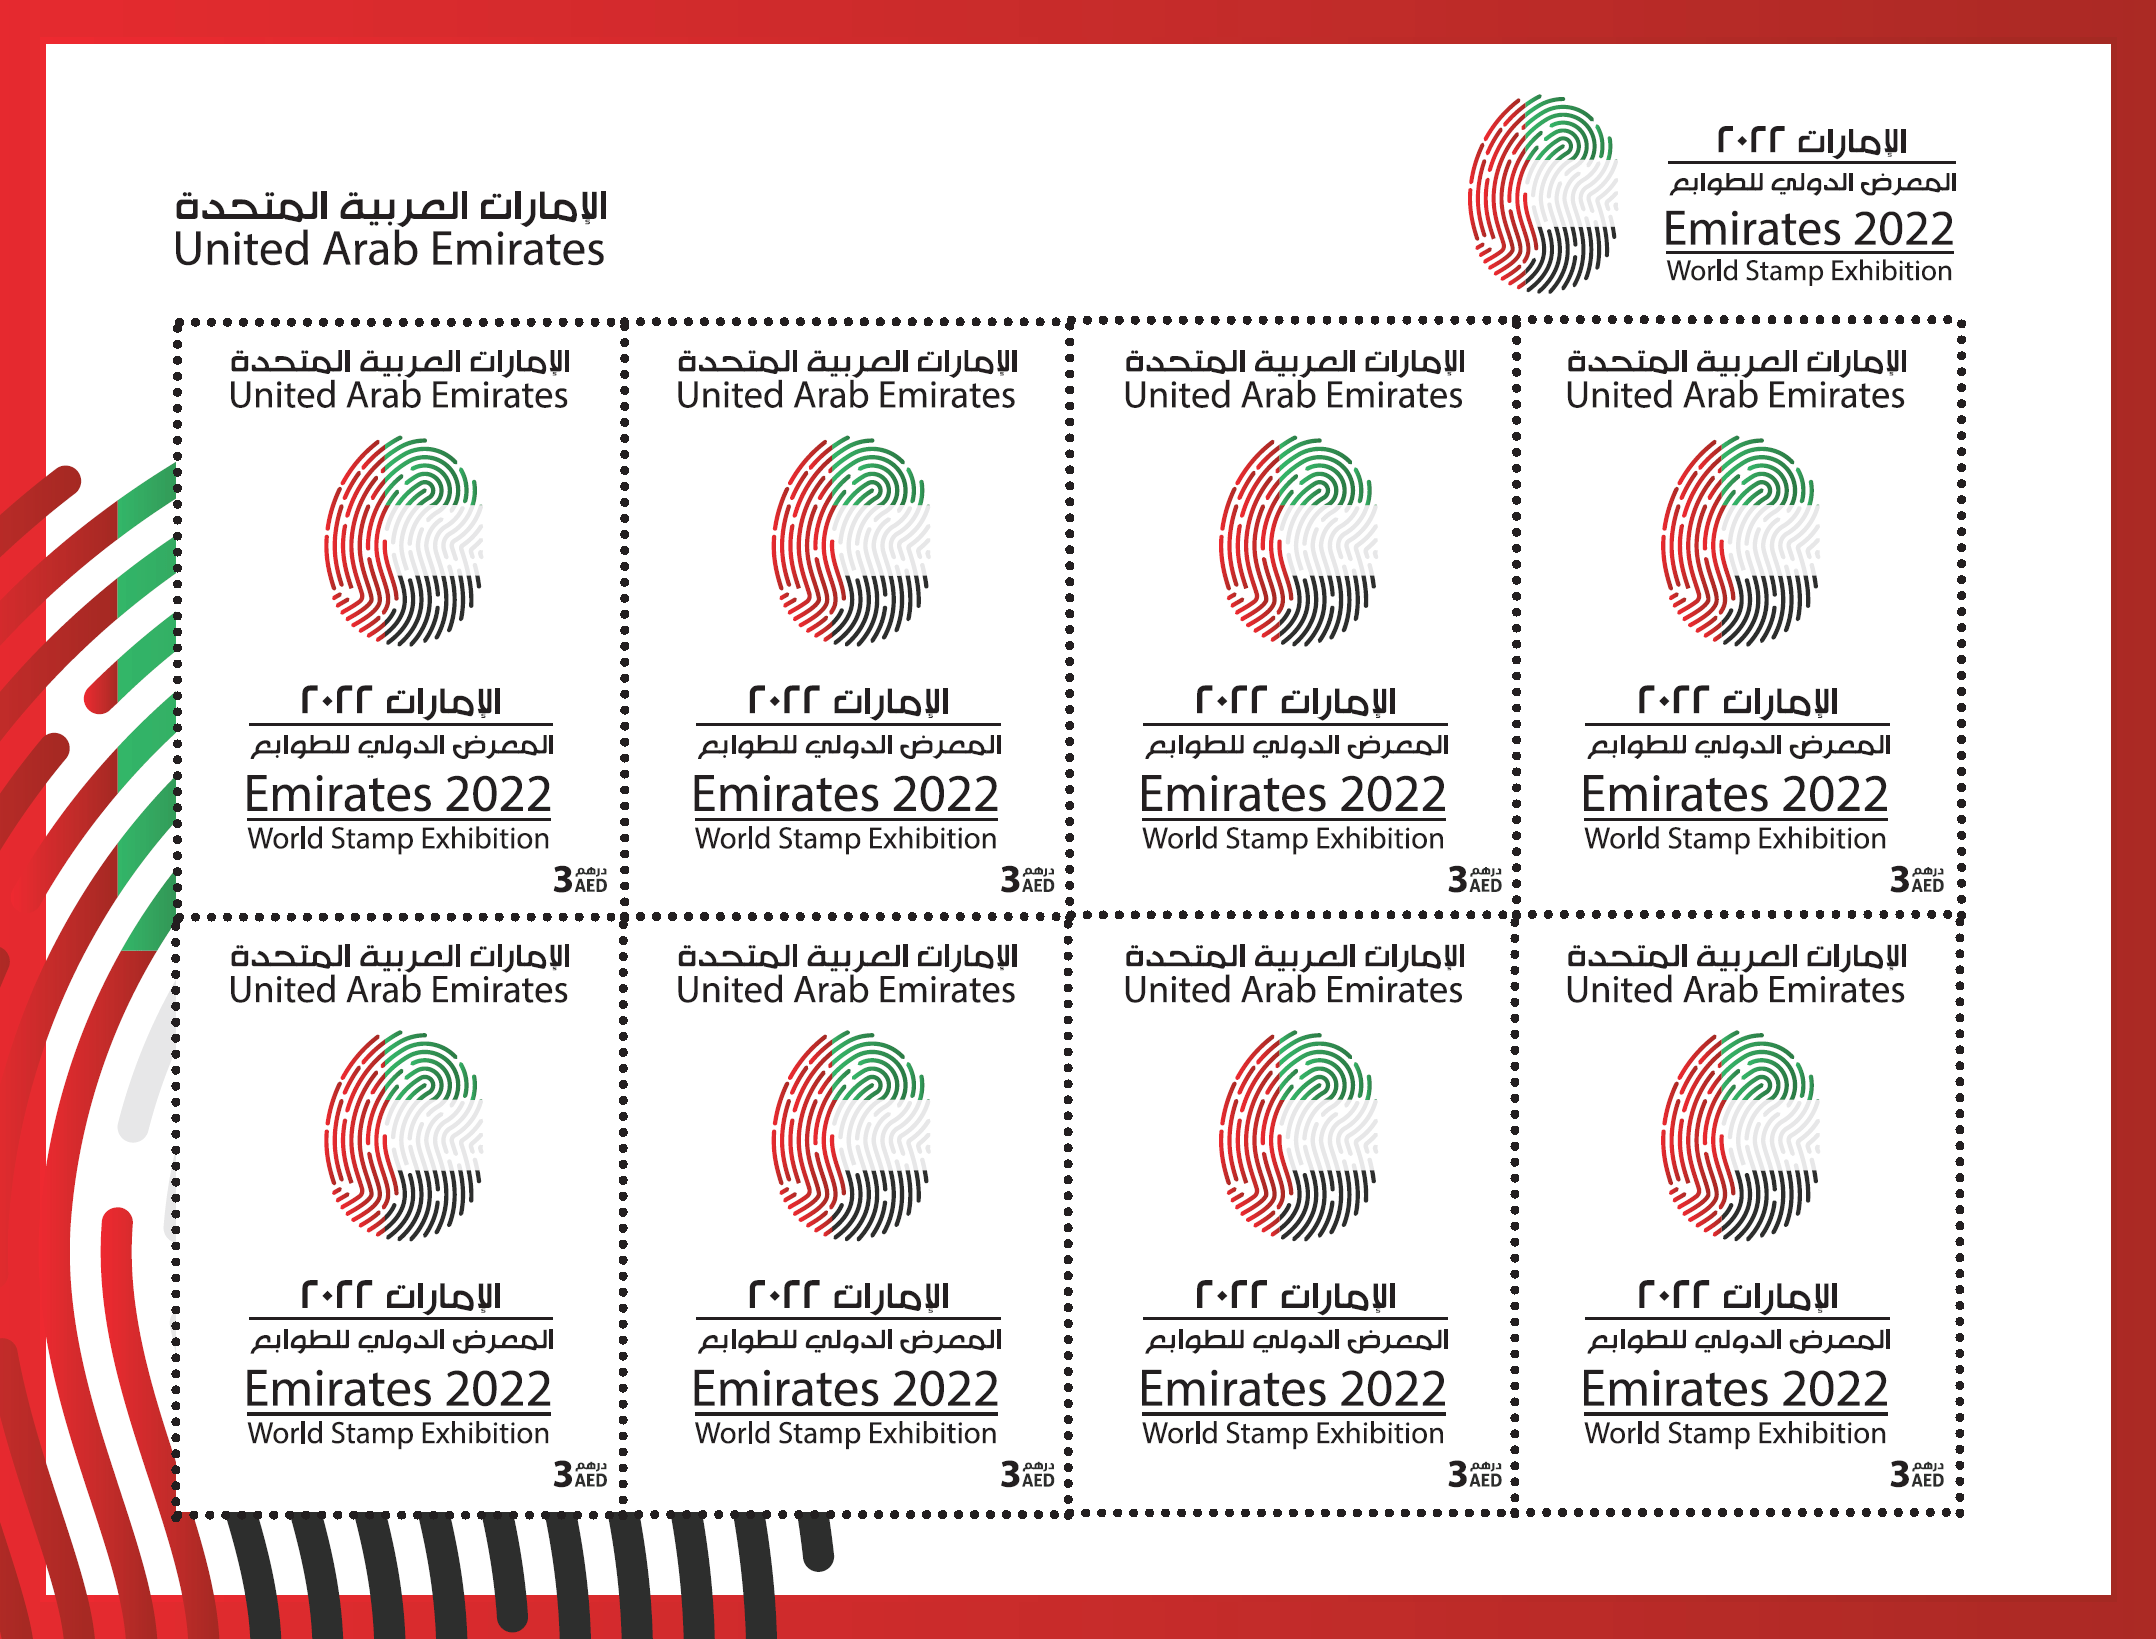 Emirates World Stamp Exhibition